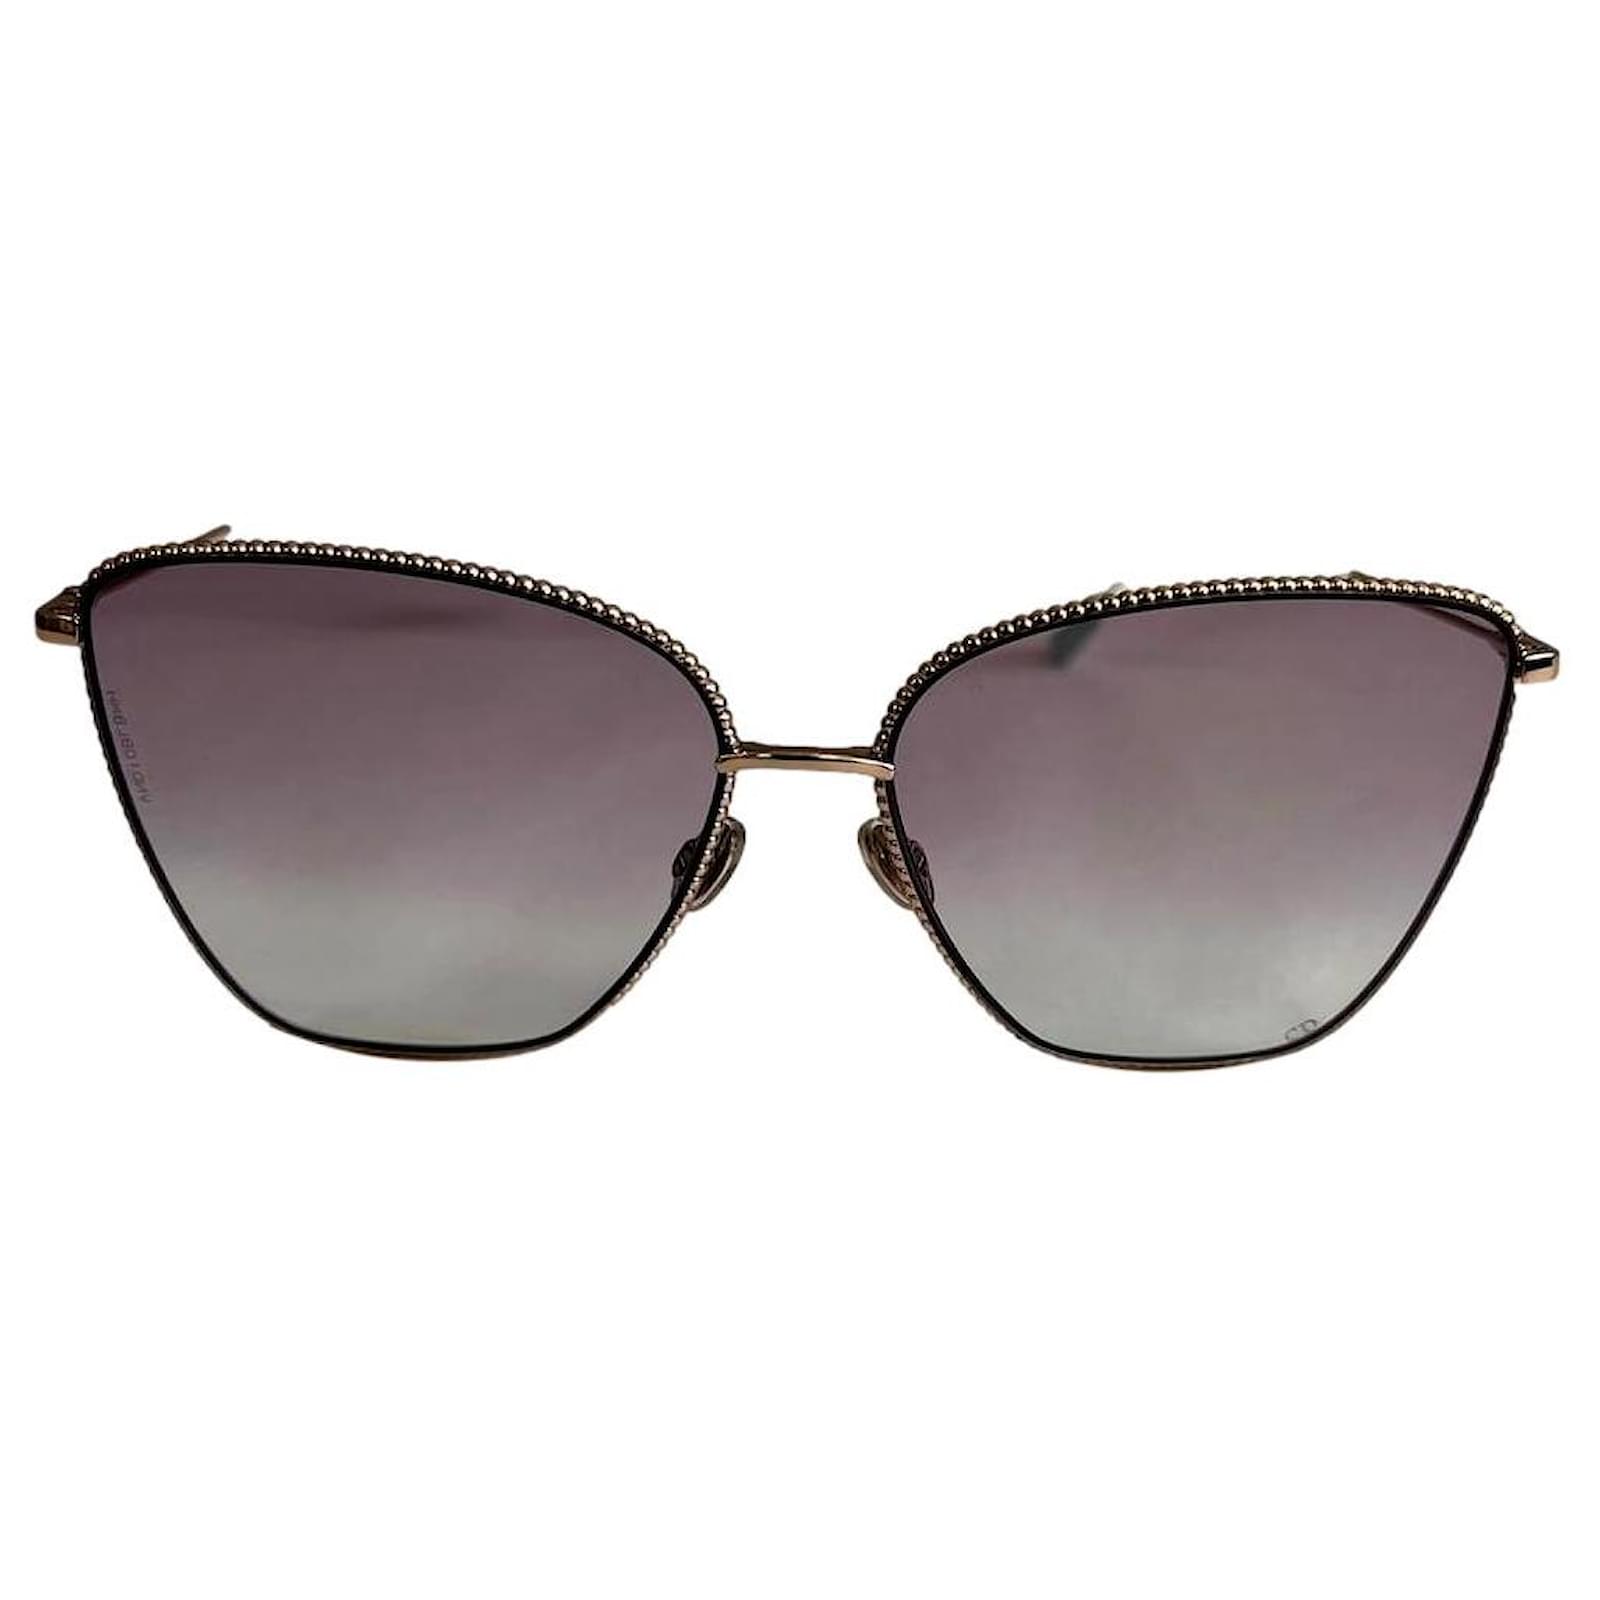 Designer Frames Outlet Dior Sunglasses SOCIETY 2F